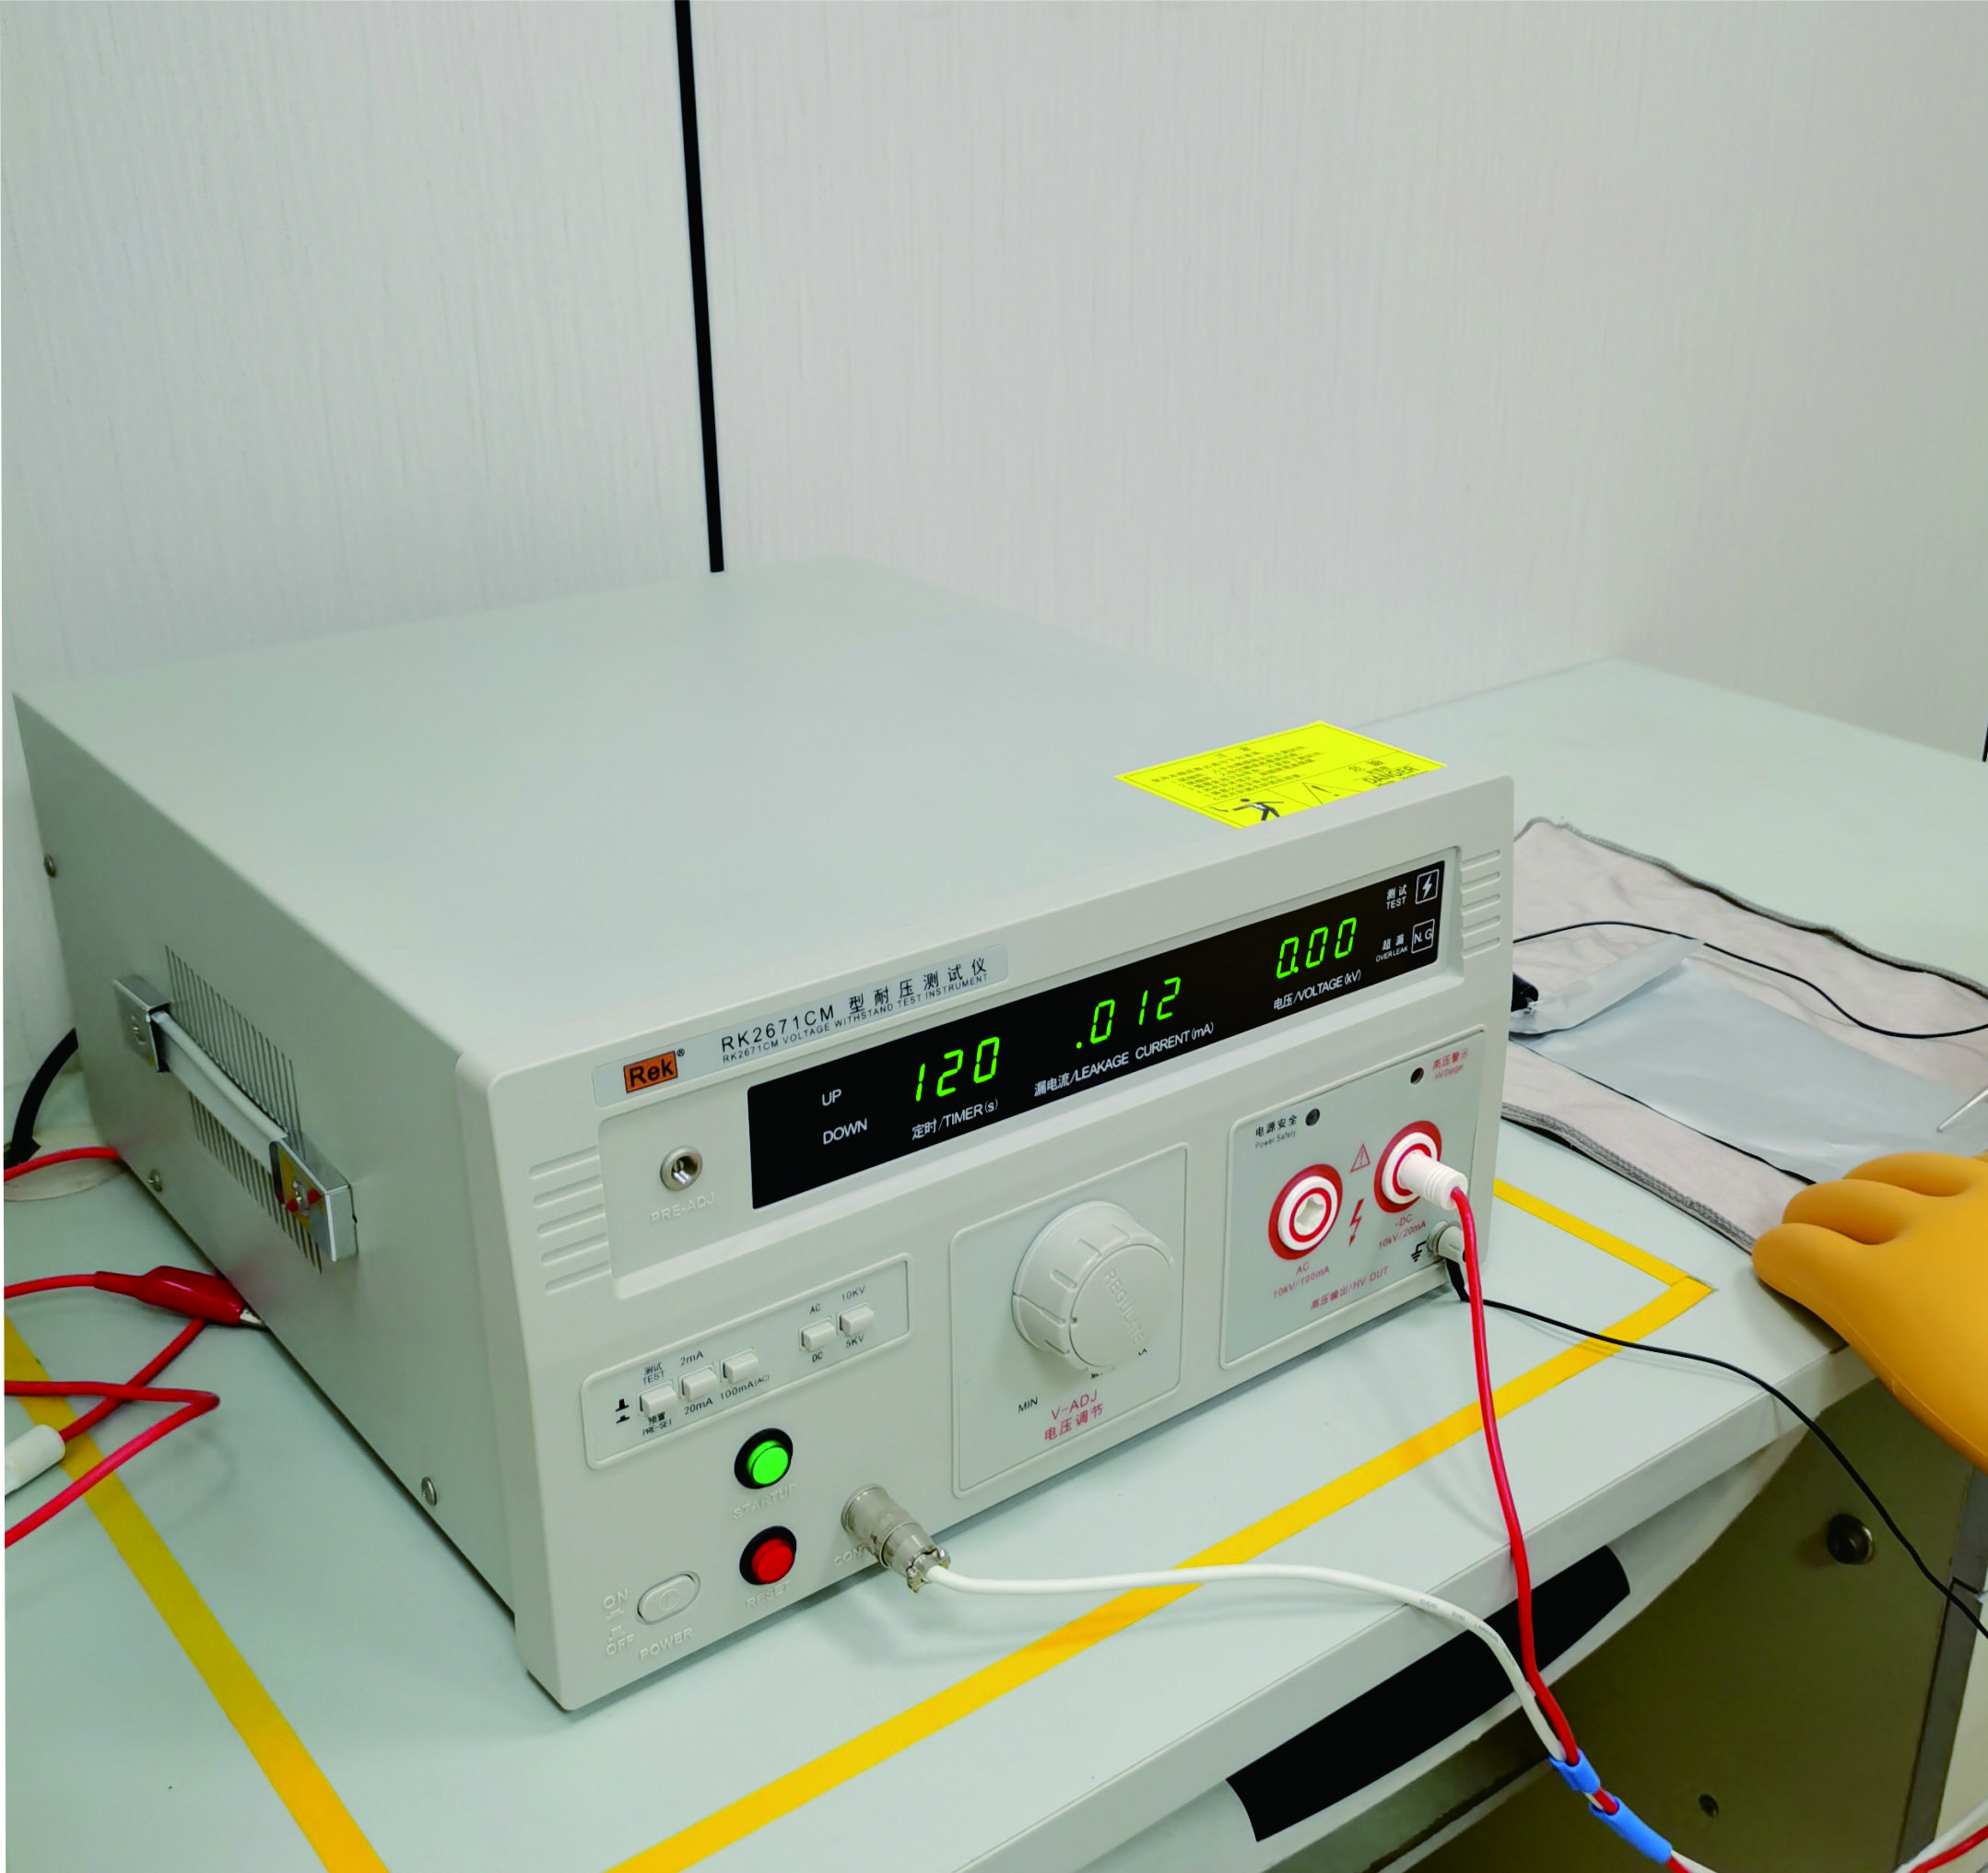 测试项目：耐压性能
检测设备：耐压测试仪